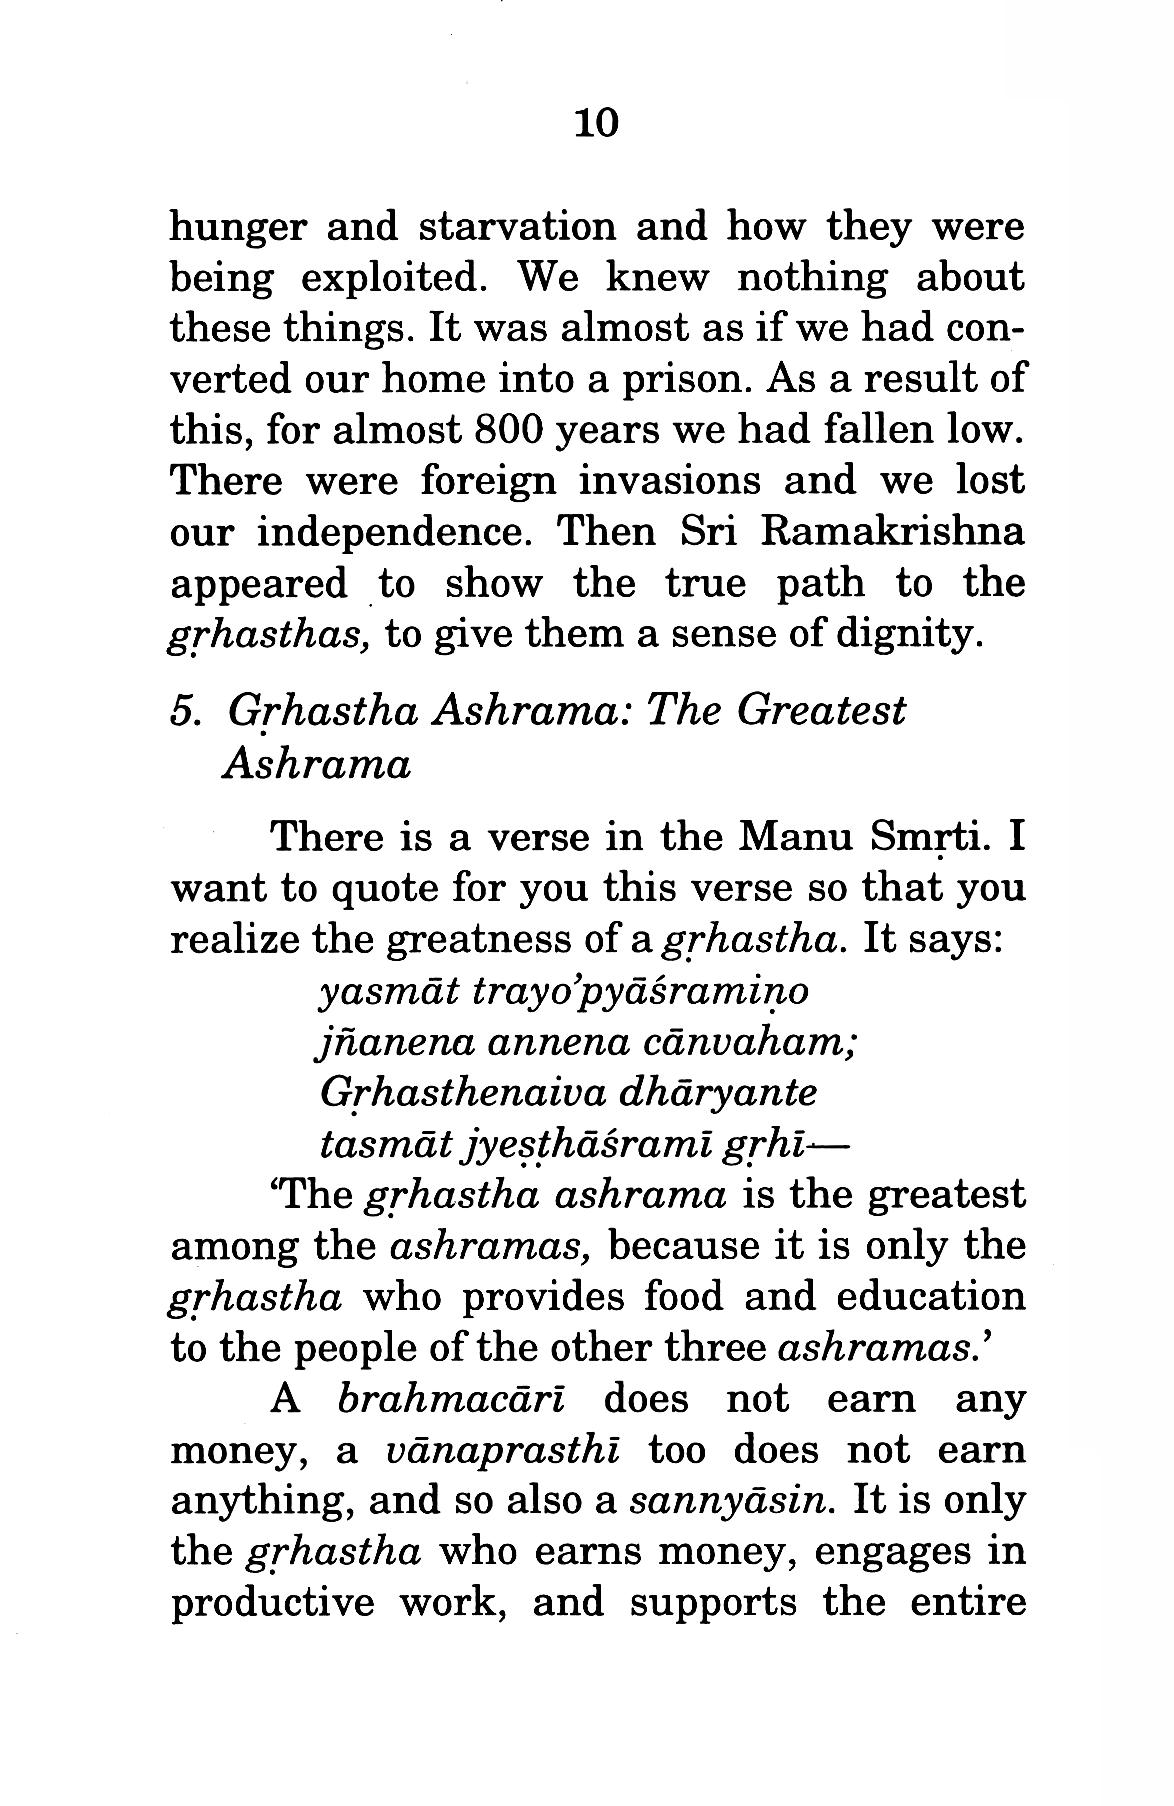 Grihastha Dharma